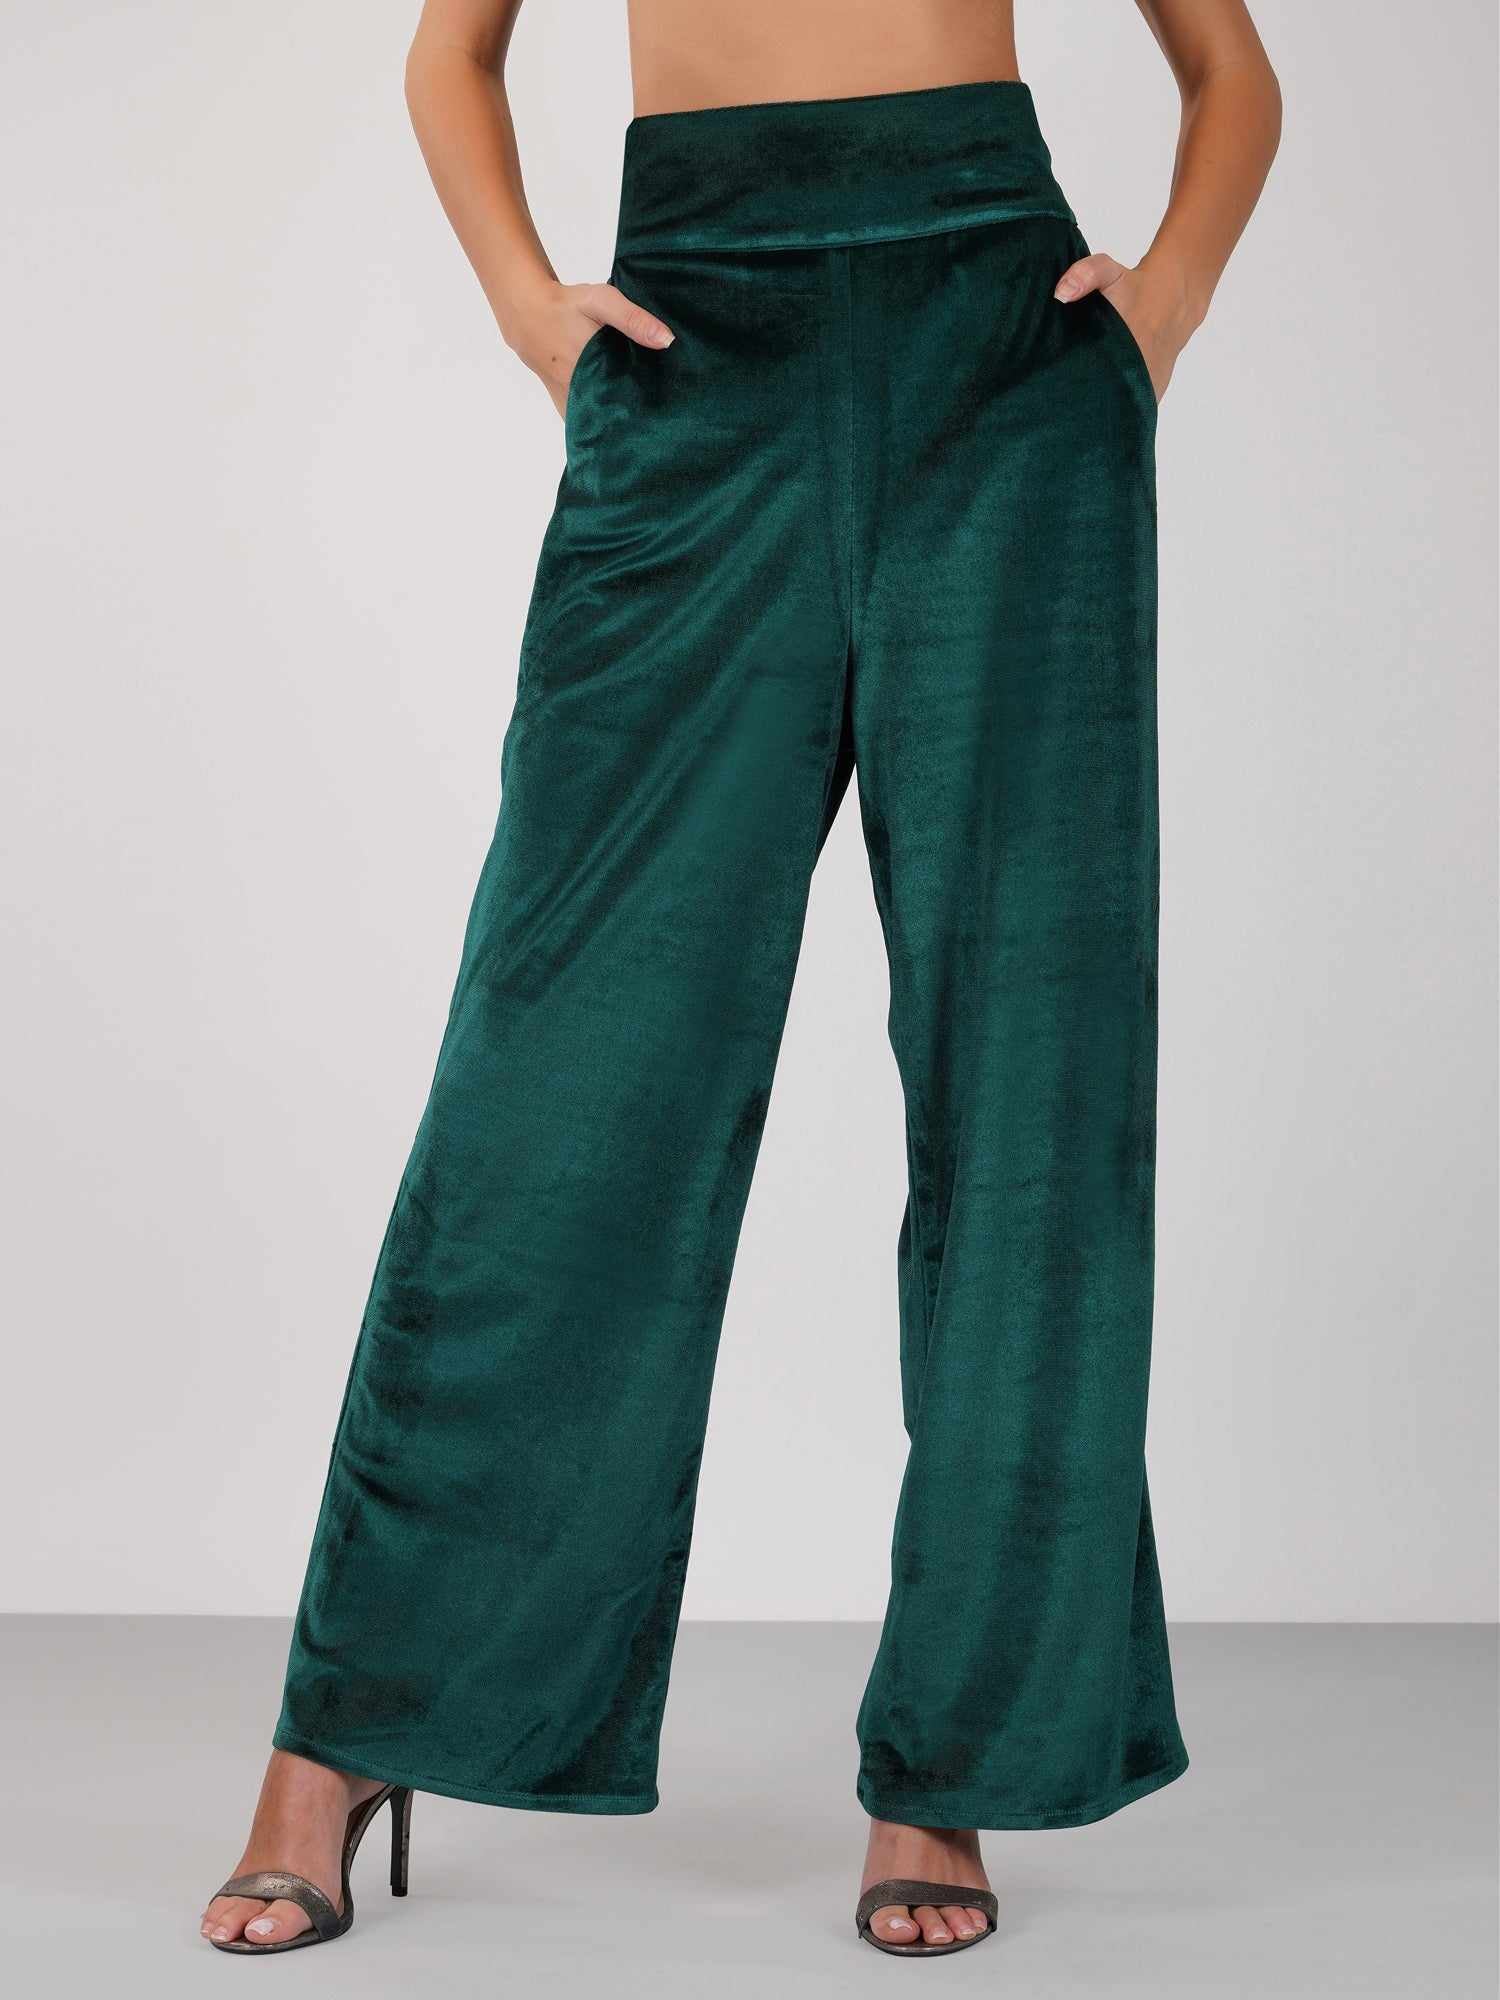 green velour high waist pant